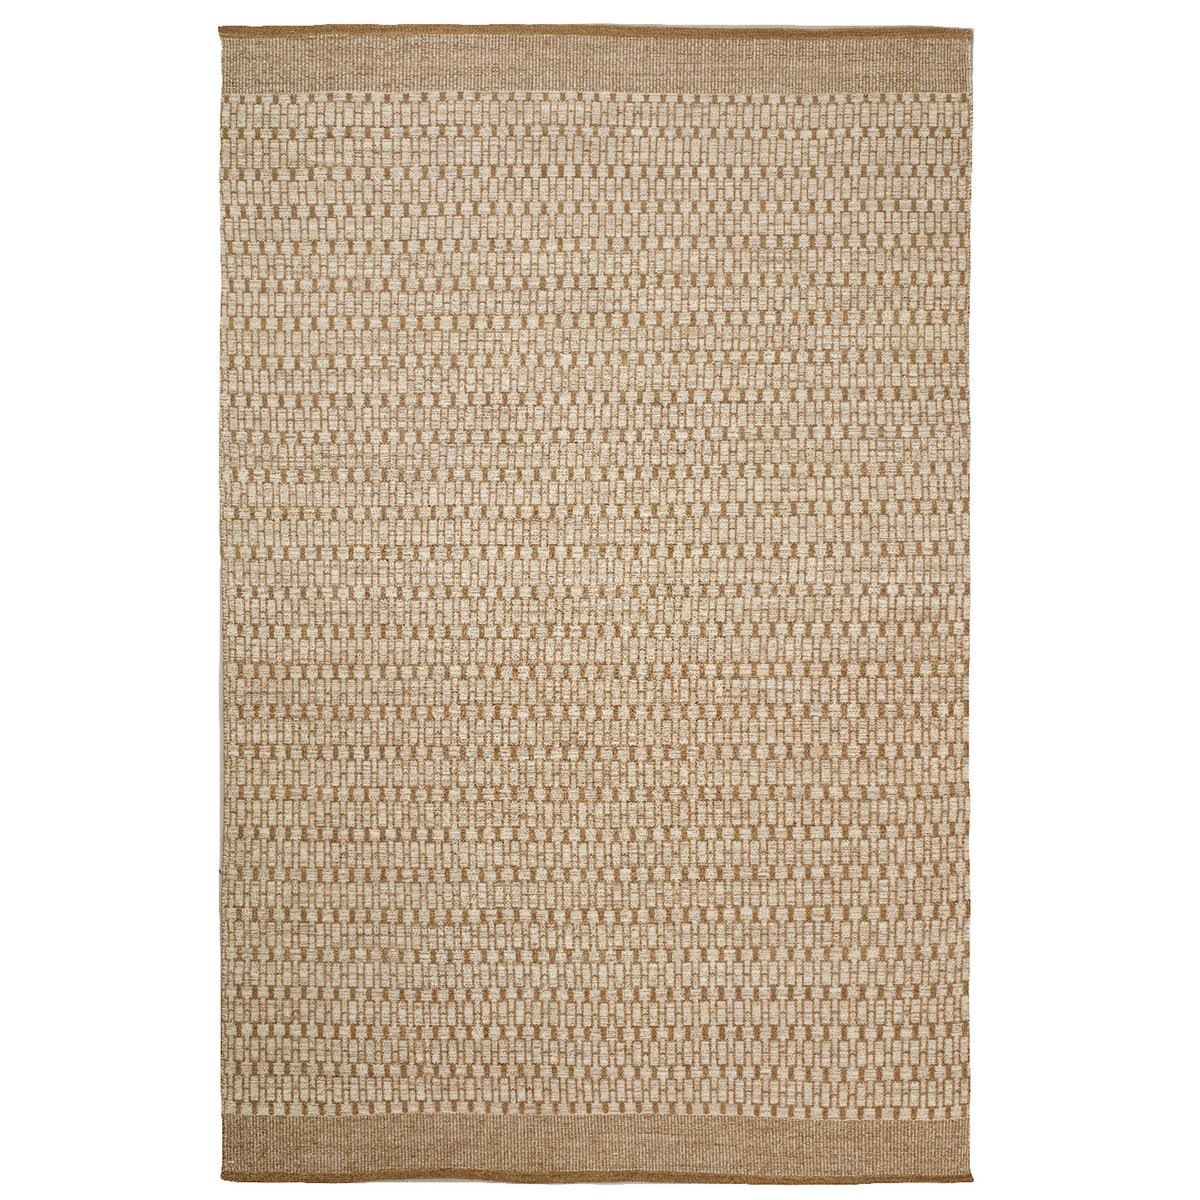 Chhatwal & Jonsson Mahi vloerkleed 200x300 cm Off white-beige